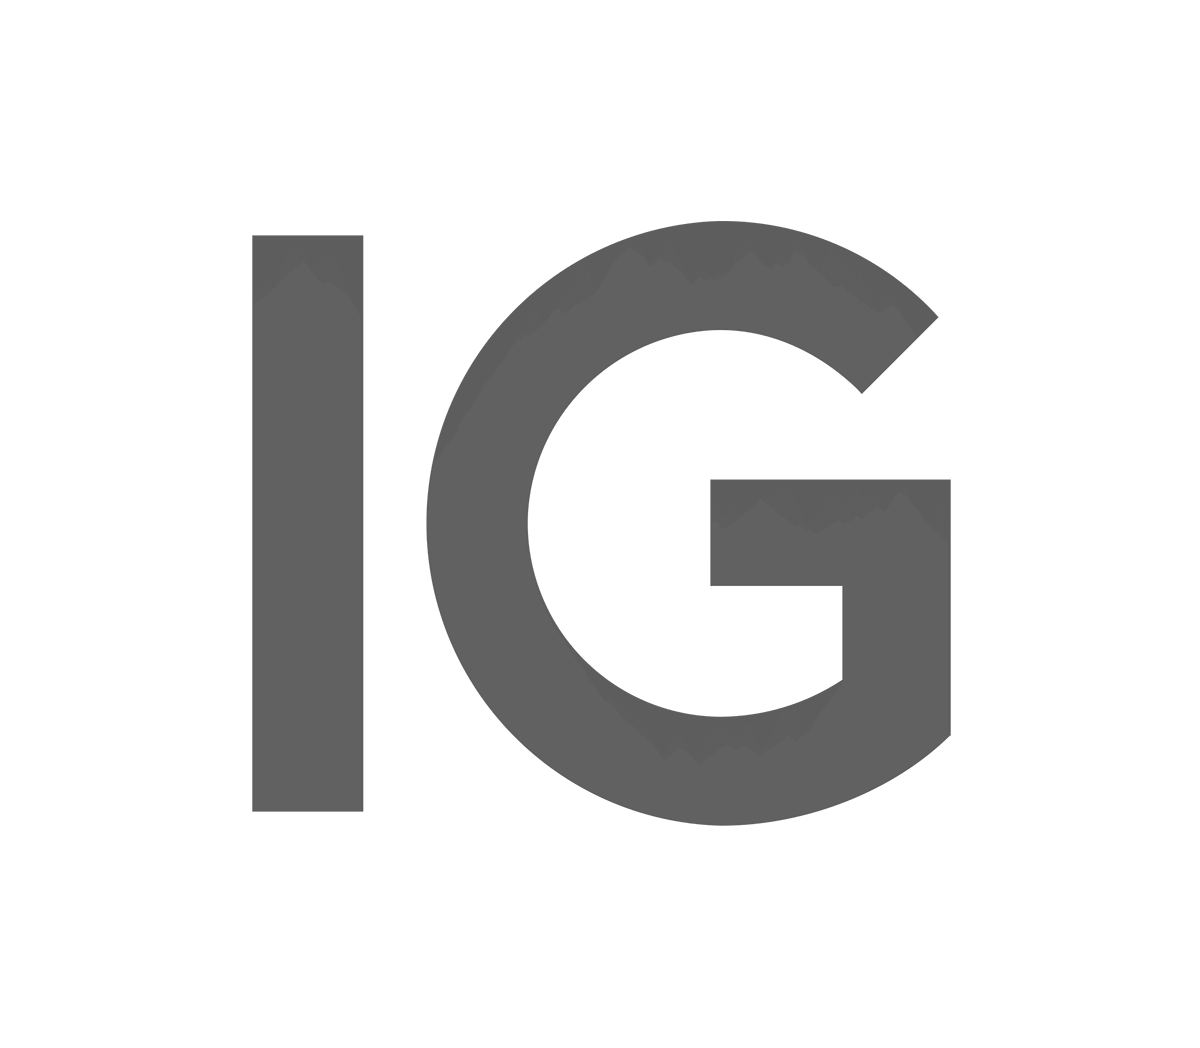 IG.com